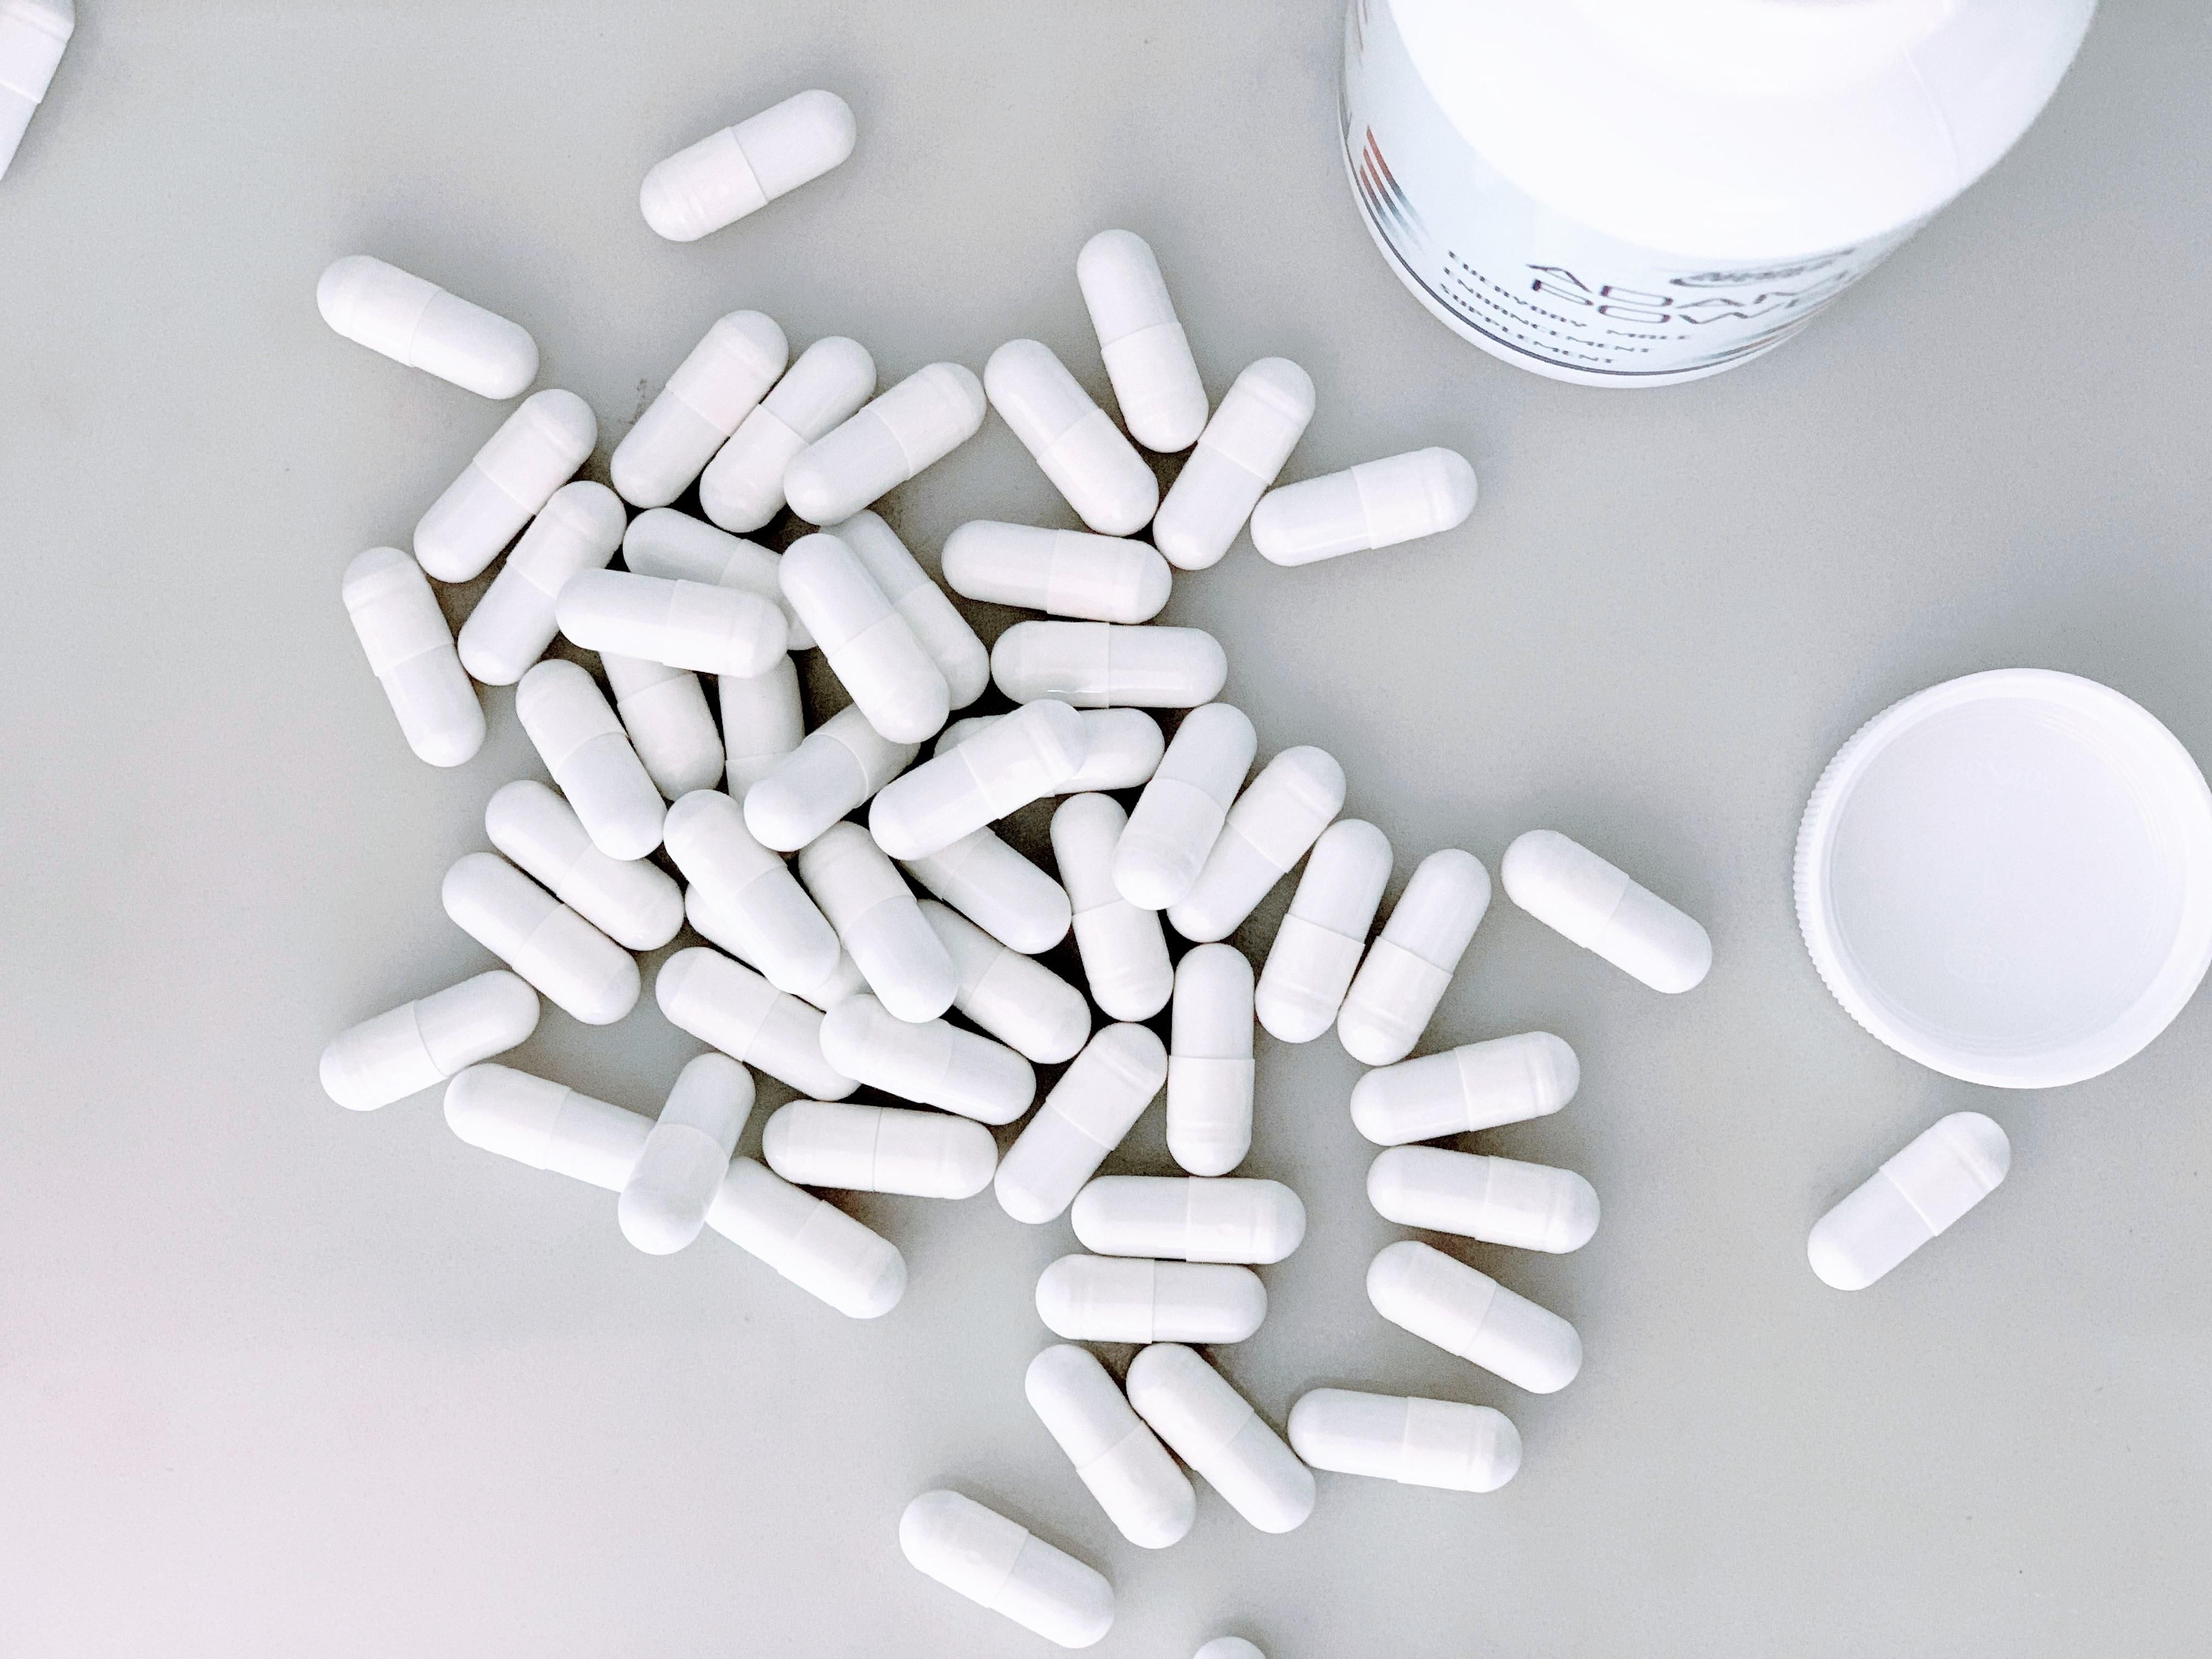 Ретиноиды в таблетках от прыщей – противопоказания, побочные эффекты